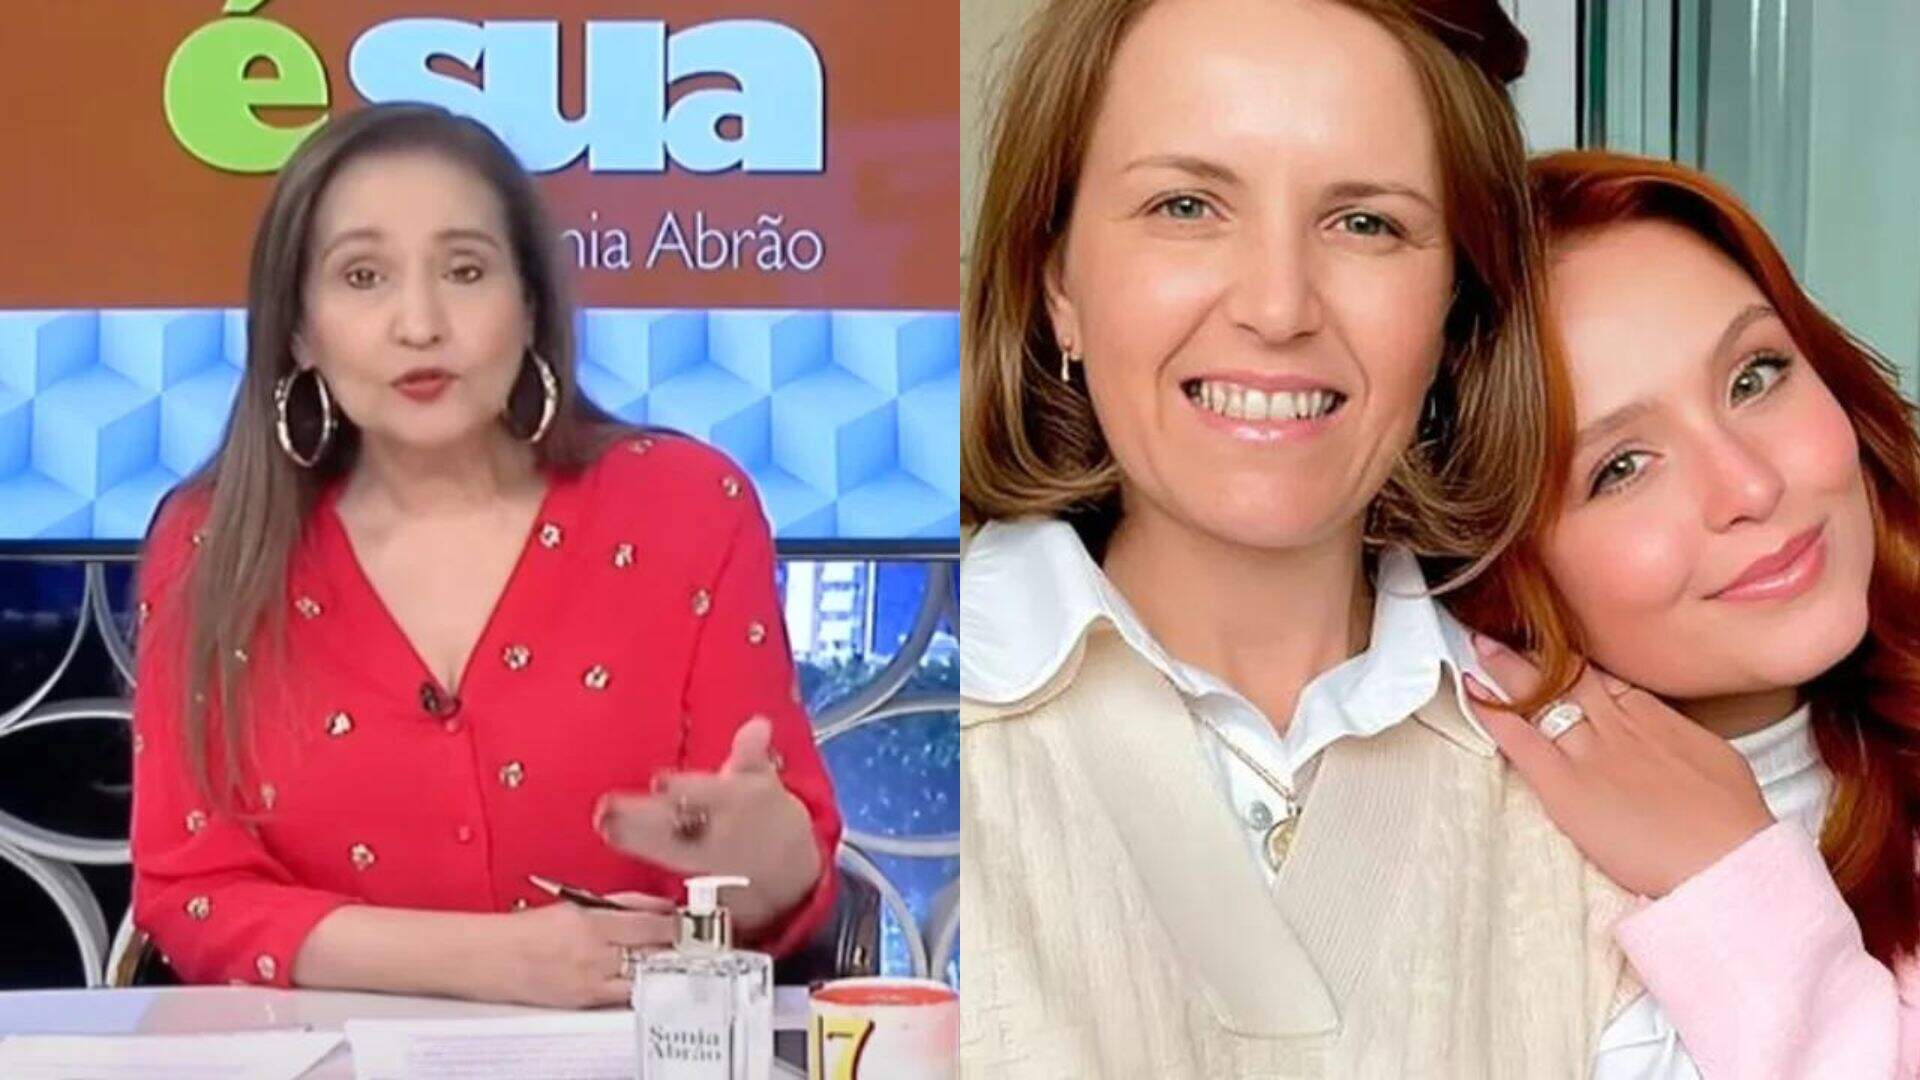 Sonia Abrão detona atitude de Larissa Manoela contra a mãe em meio a nova polêmica familiar - Metropolitana FM